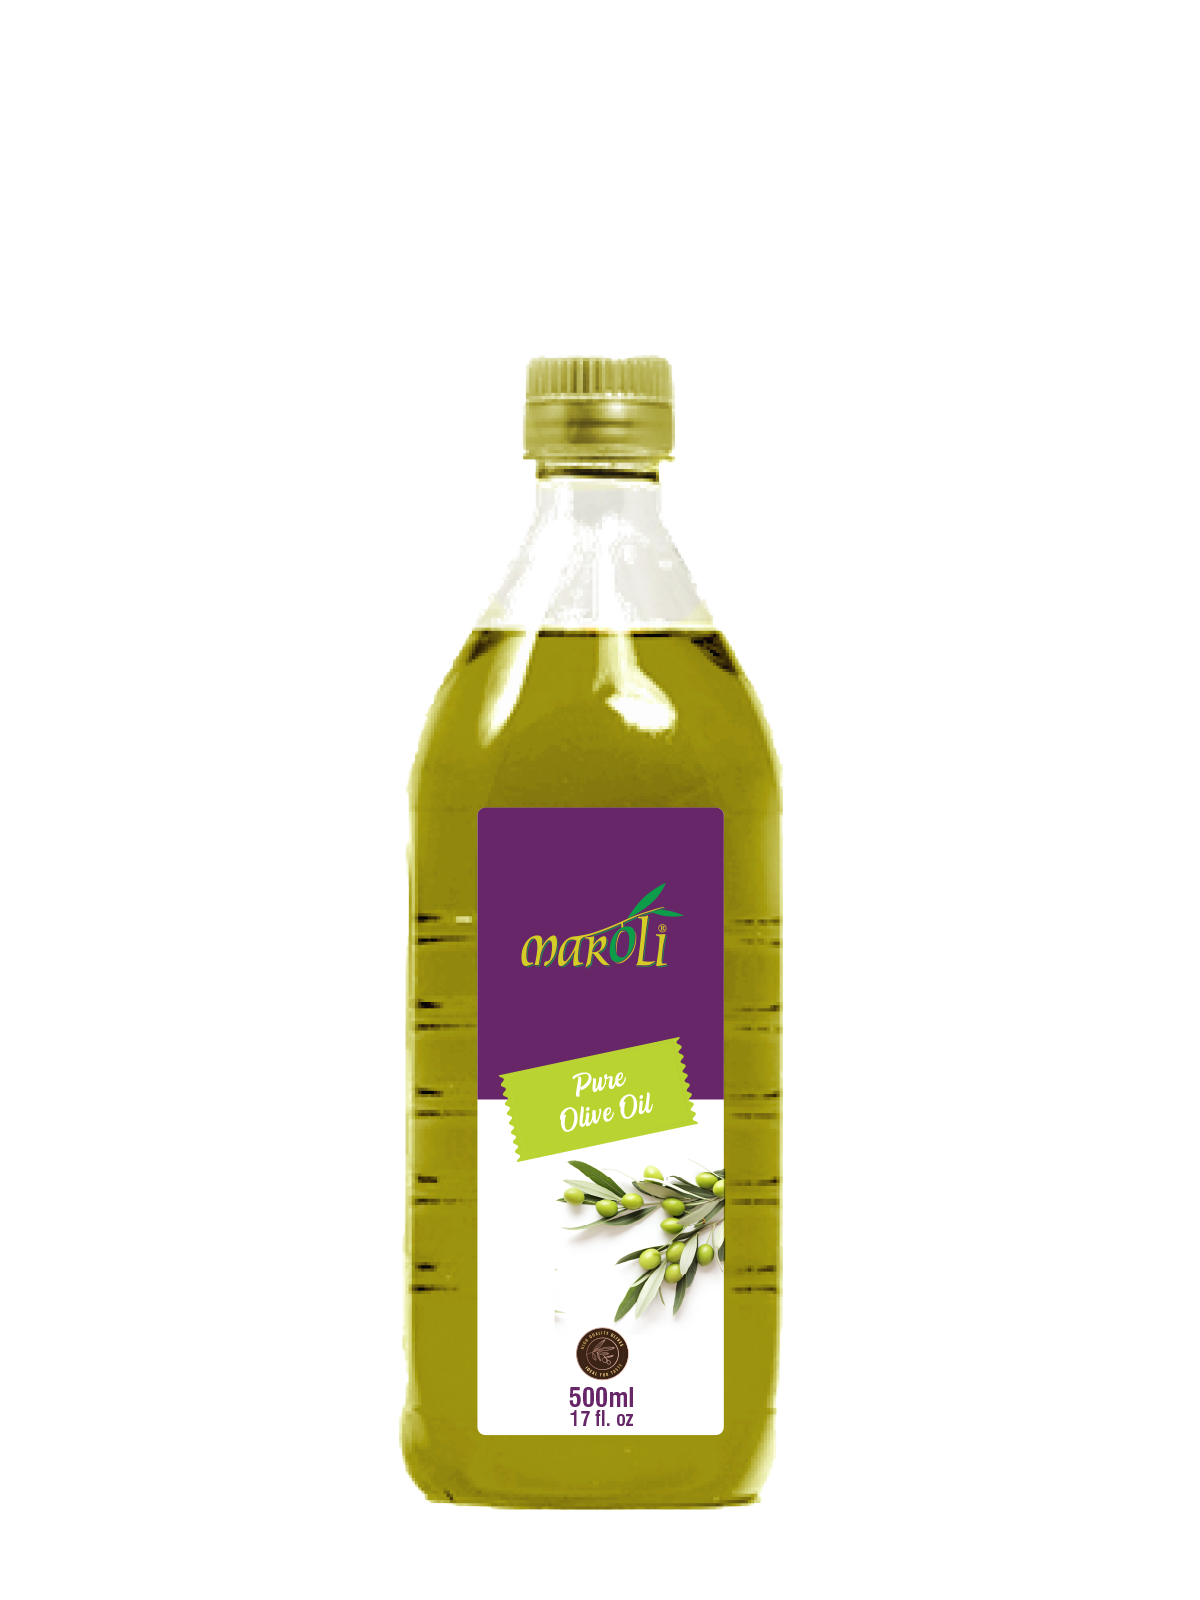 Maroli Olives - Bulk Table Olives Manufacturer in Turkey, Olive